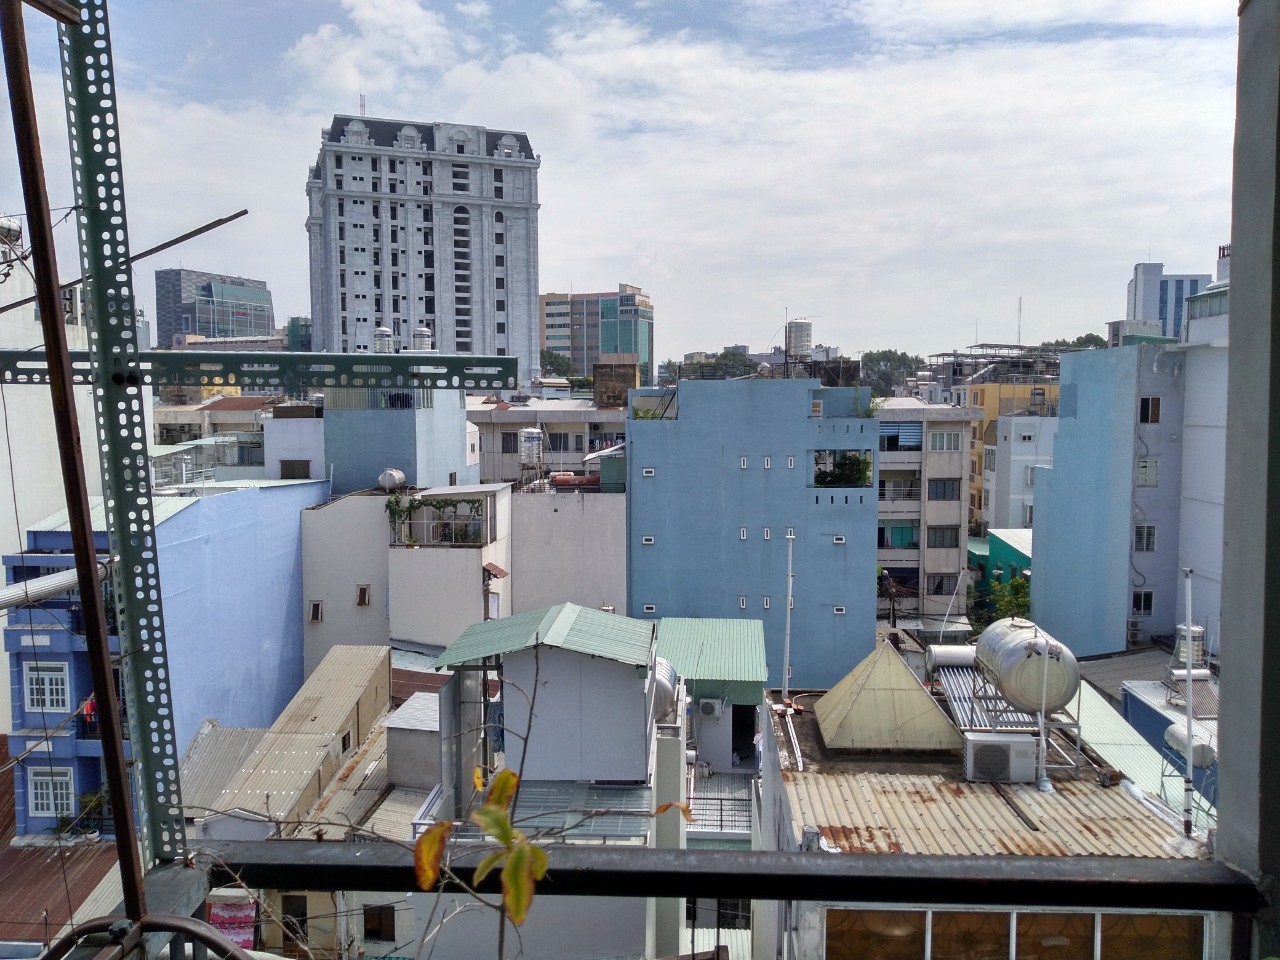  Đi định cư nên cần bán Homestay tại đường Nguyễn Trãi, Q1 DTSD 270m2 1T, 3L, ST 16 ty5 TL